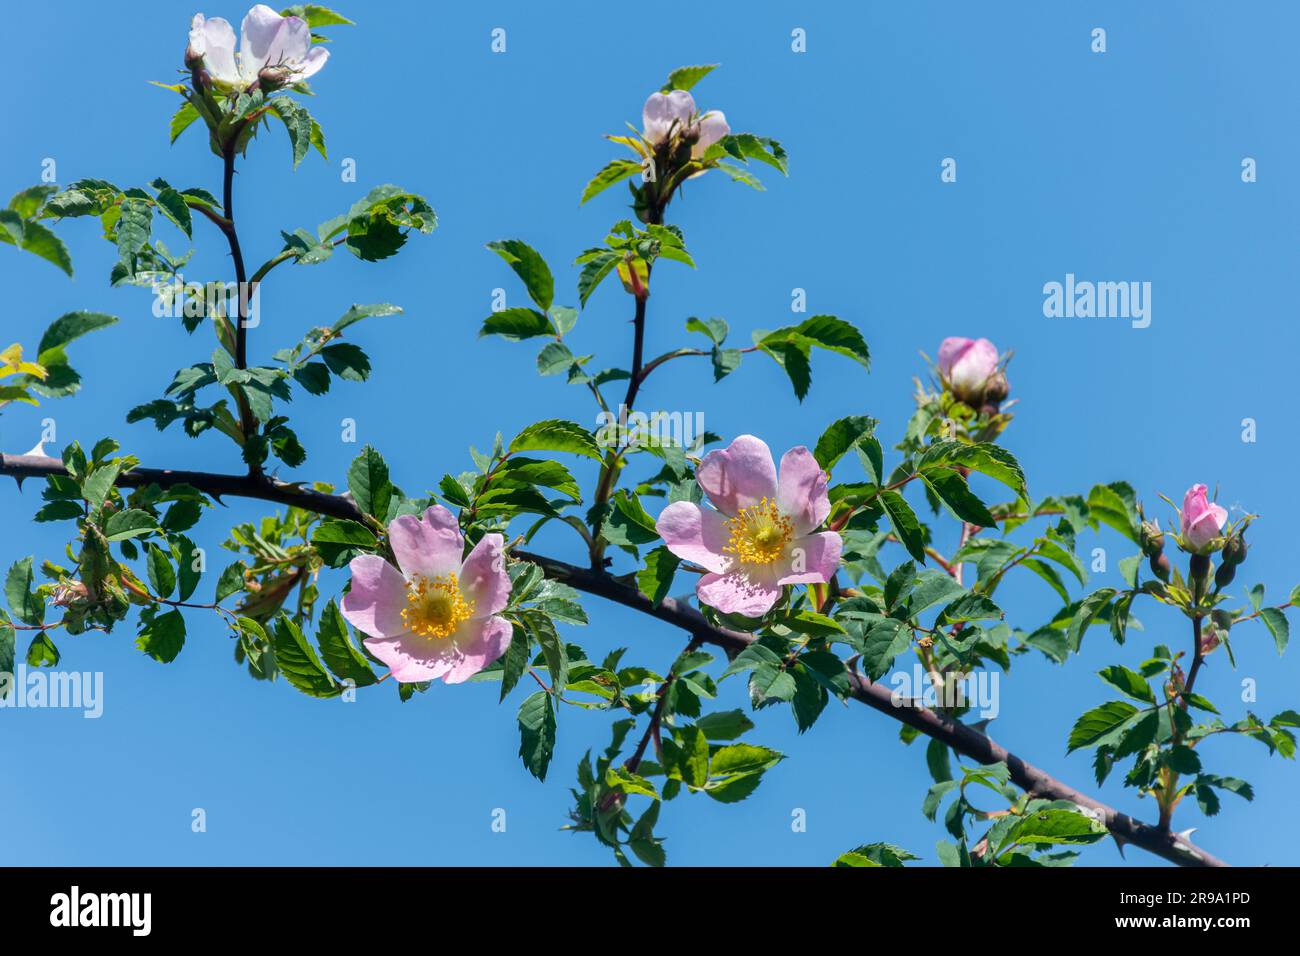 Les roses sauvages de chien (Rosa canina) fleurissent contre un ciel bleu en juin ou en été, au Royaume-Uni Banque D'Images